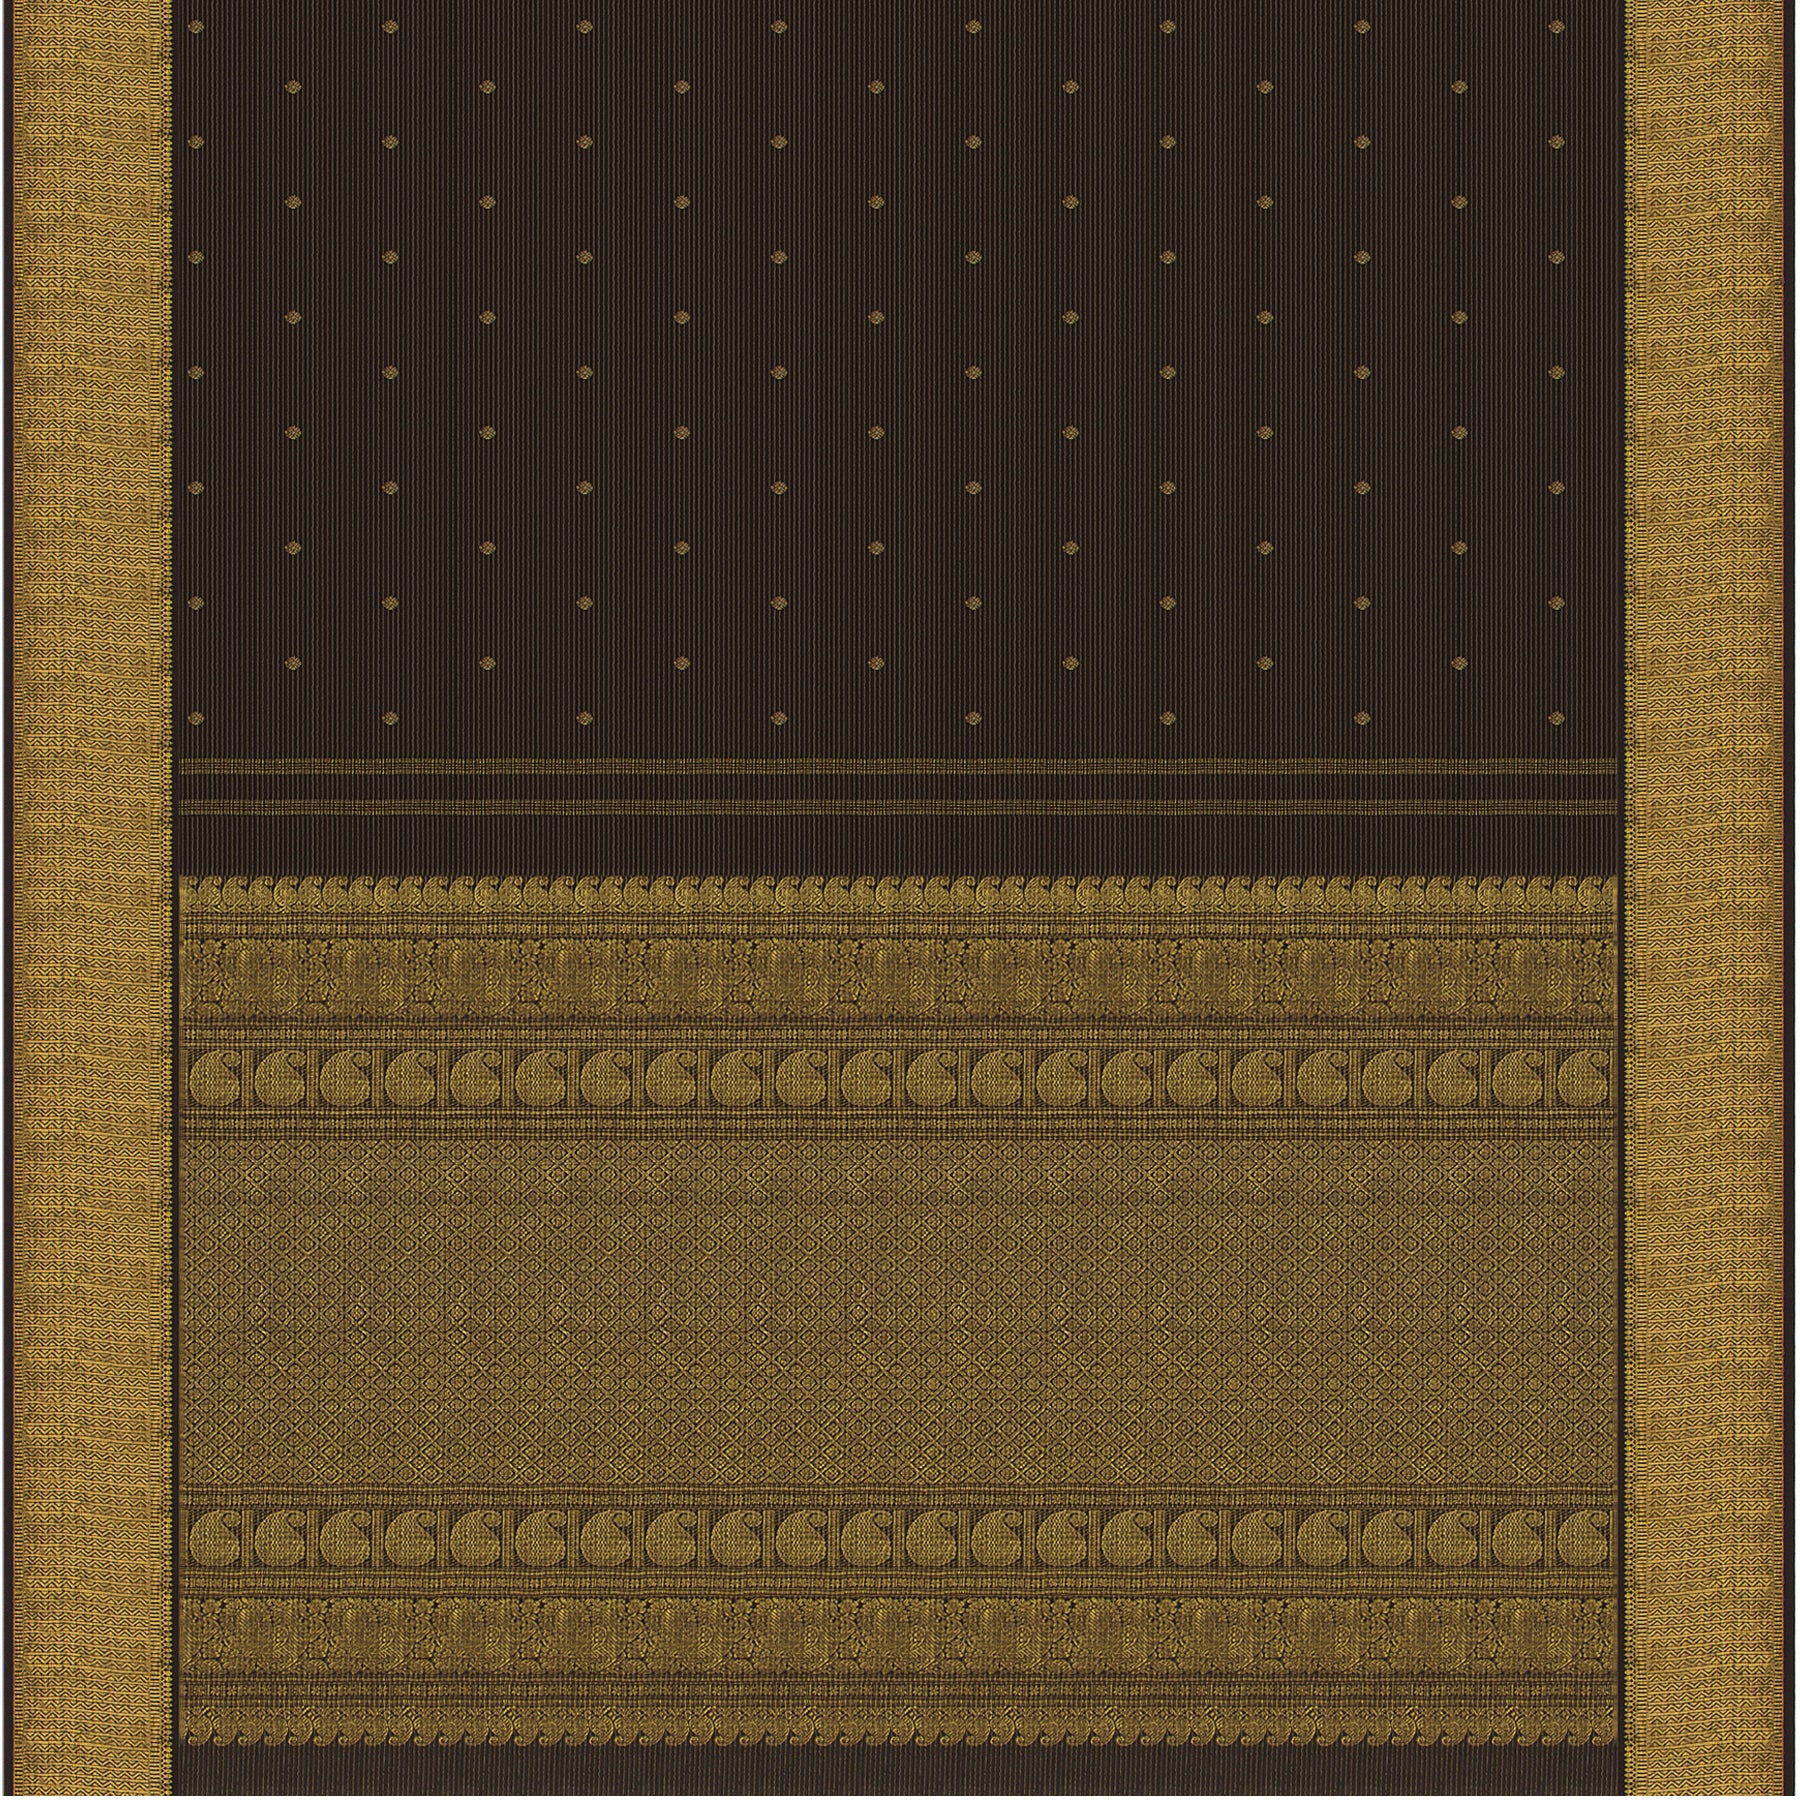 Kanakavalli Kanjivaram Silk Sari 22-110-HS001-00431 - Full View